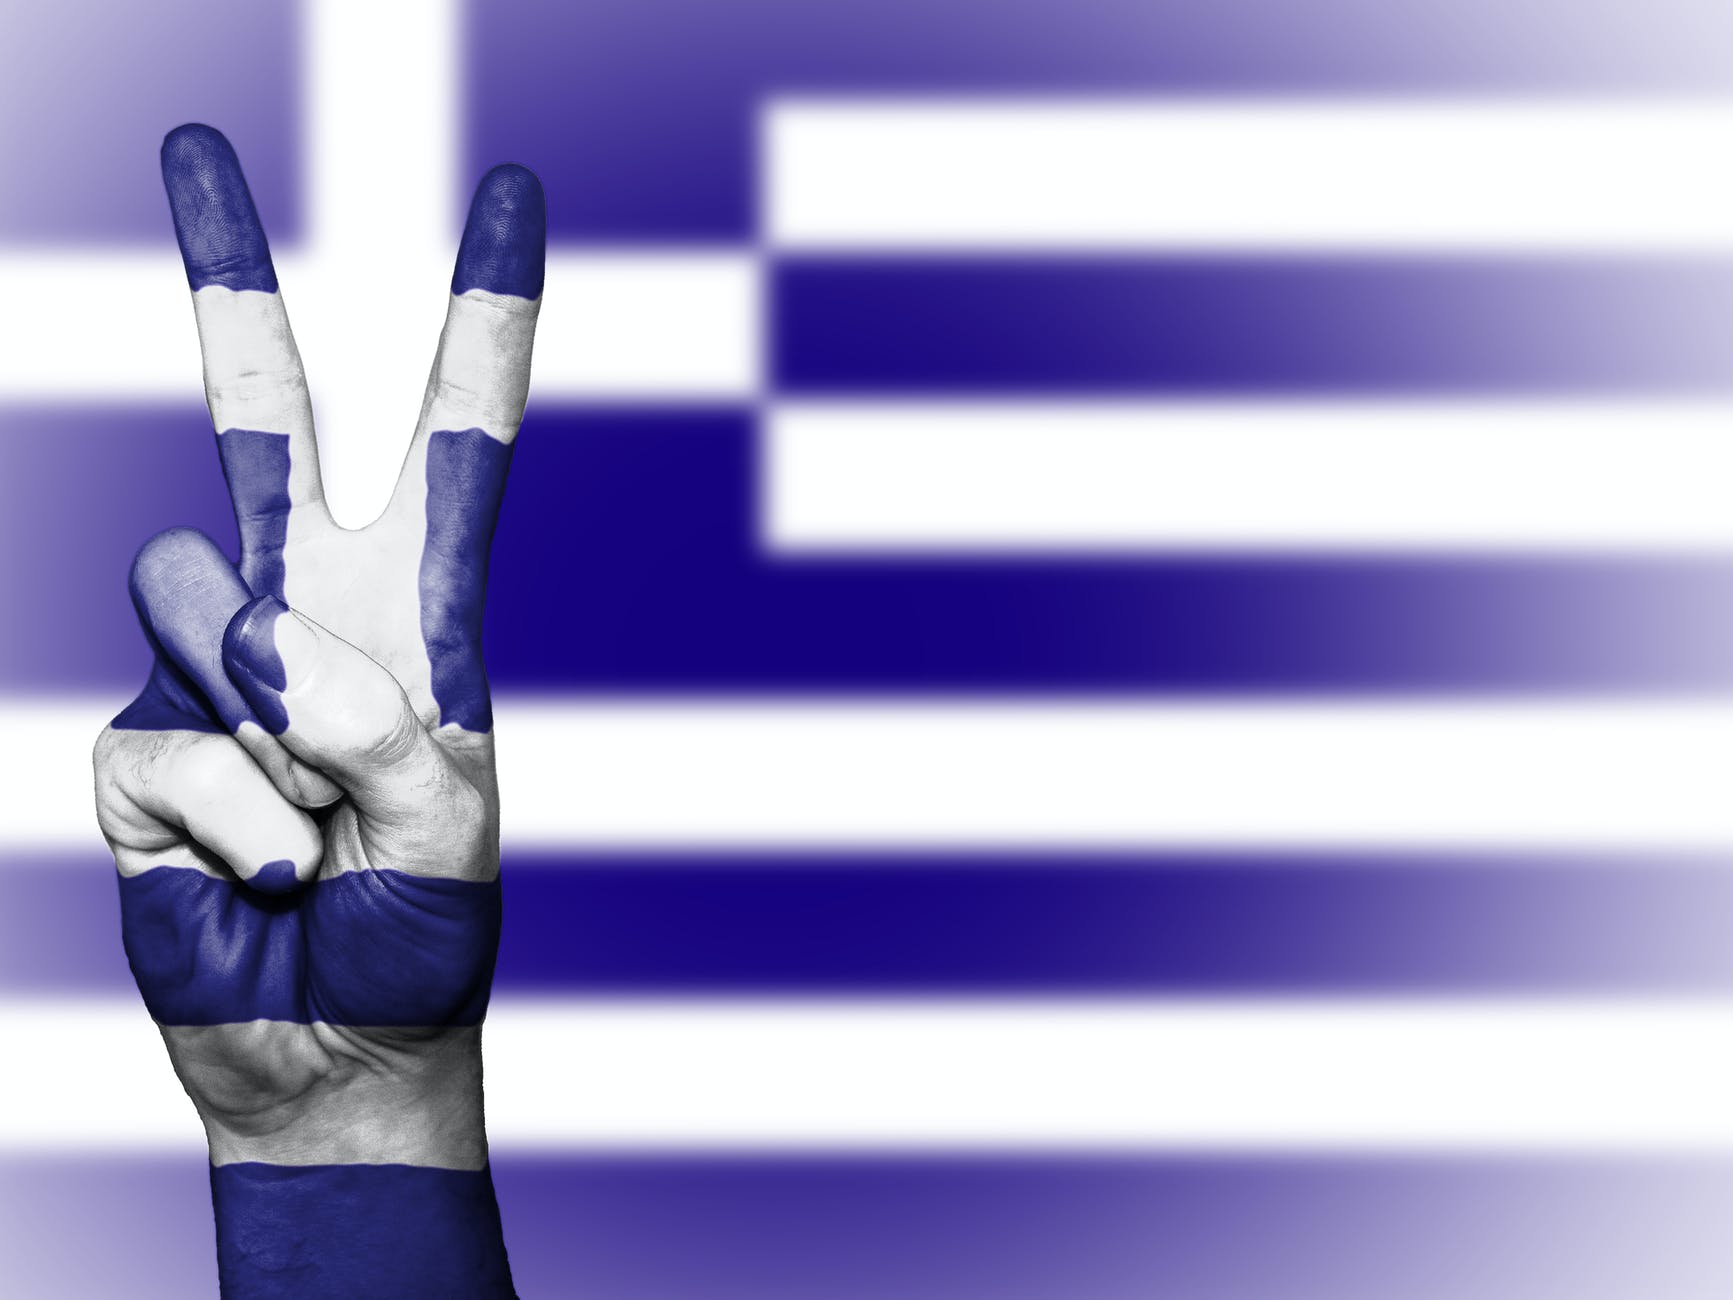 bandiera grecia